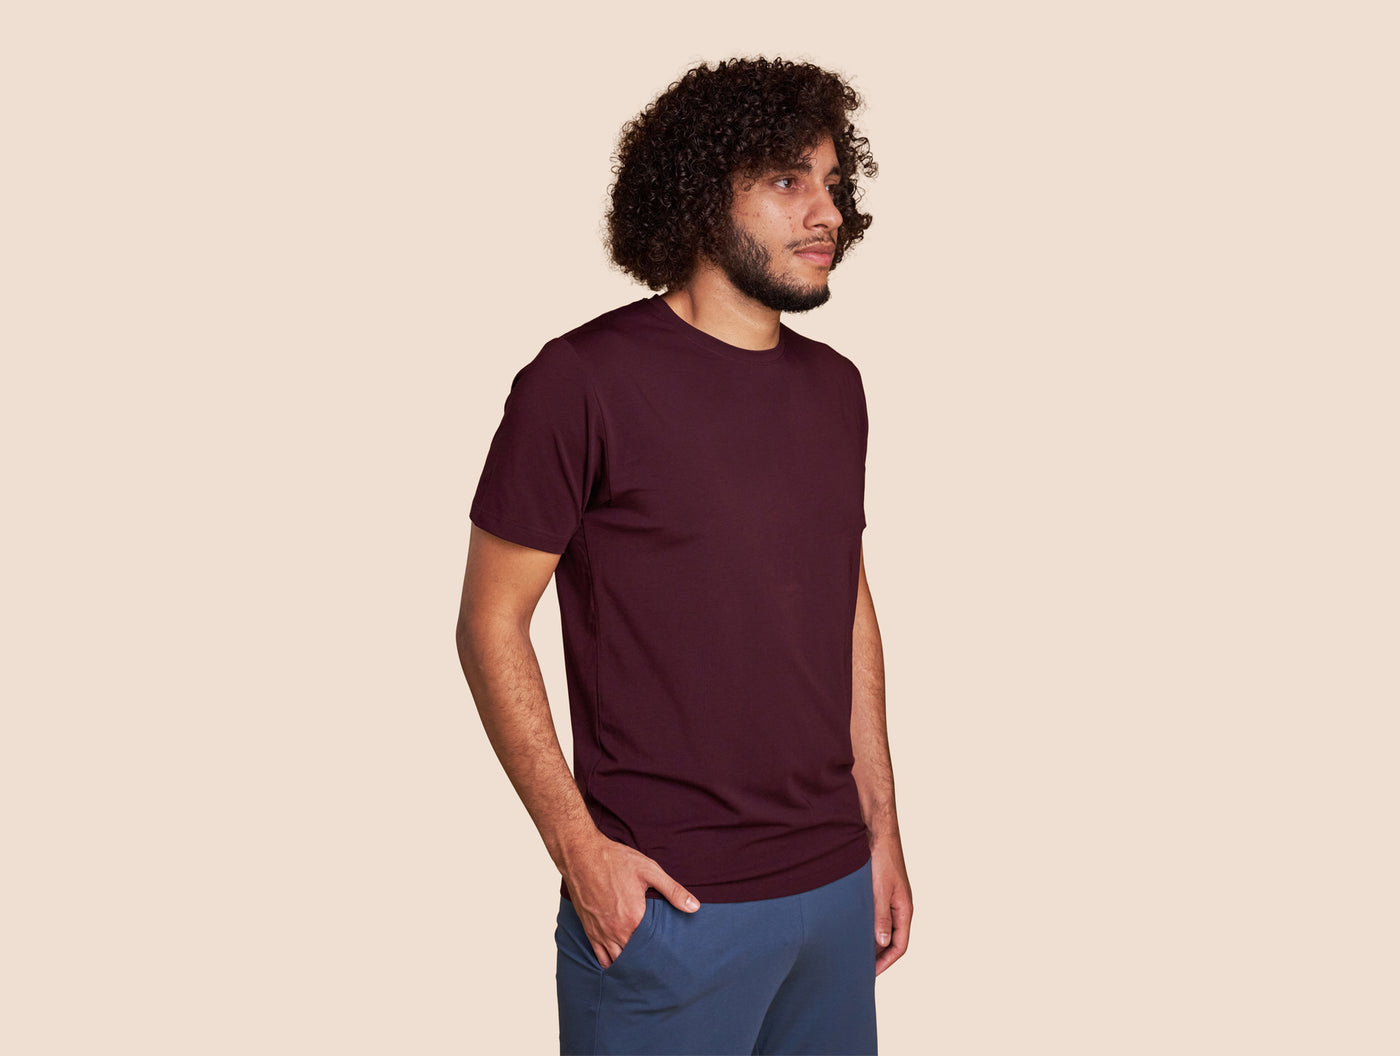 Pétrone T-shirt manches courtes coton pima micromodal lie de vin homme#couleur_lie-de-vin